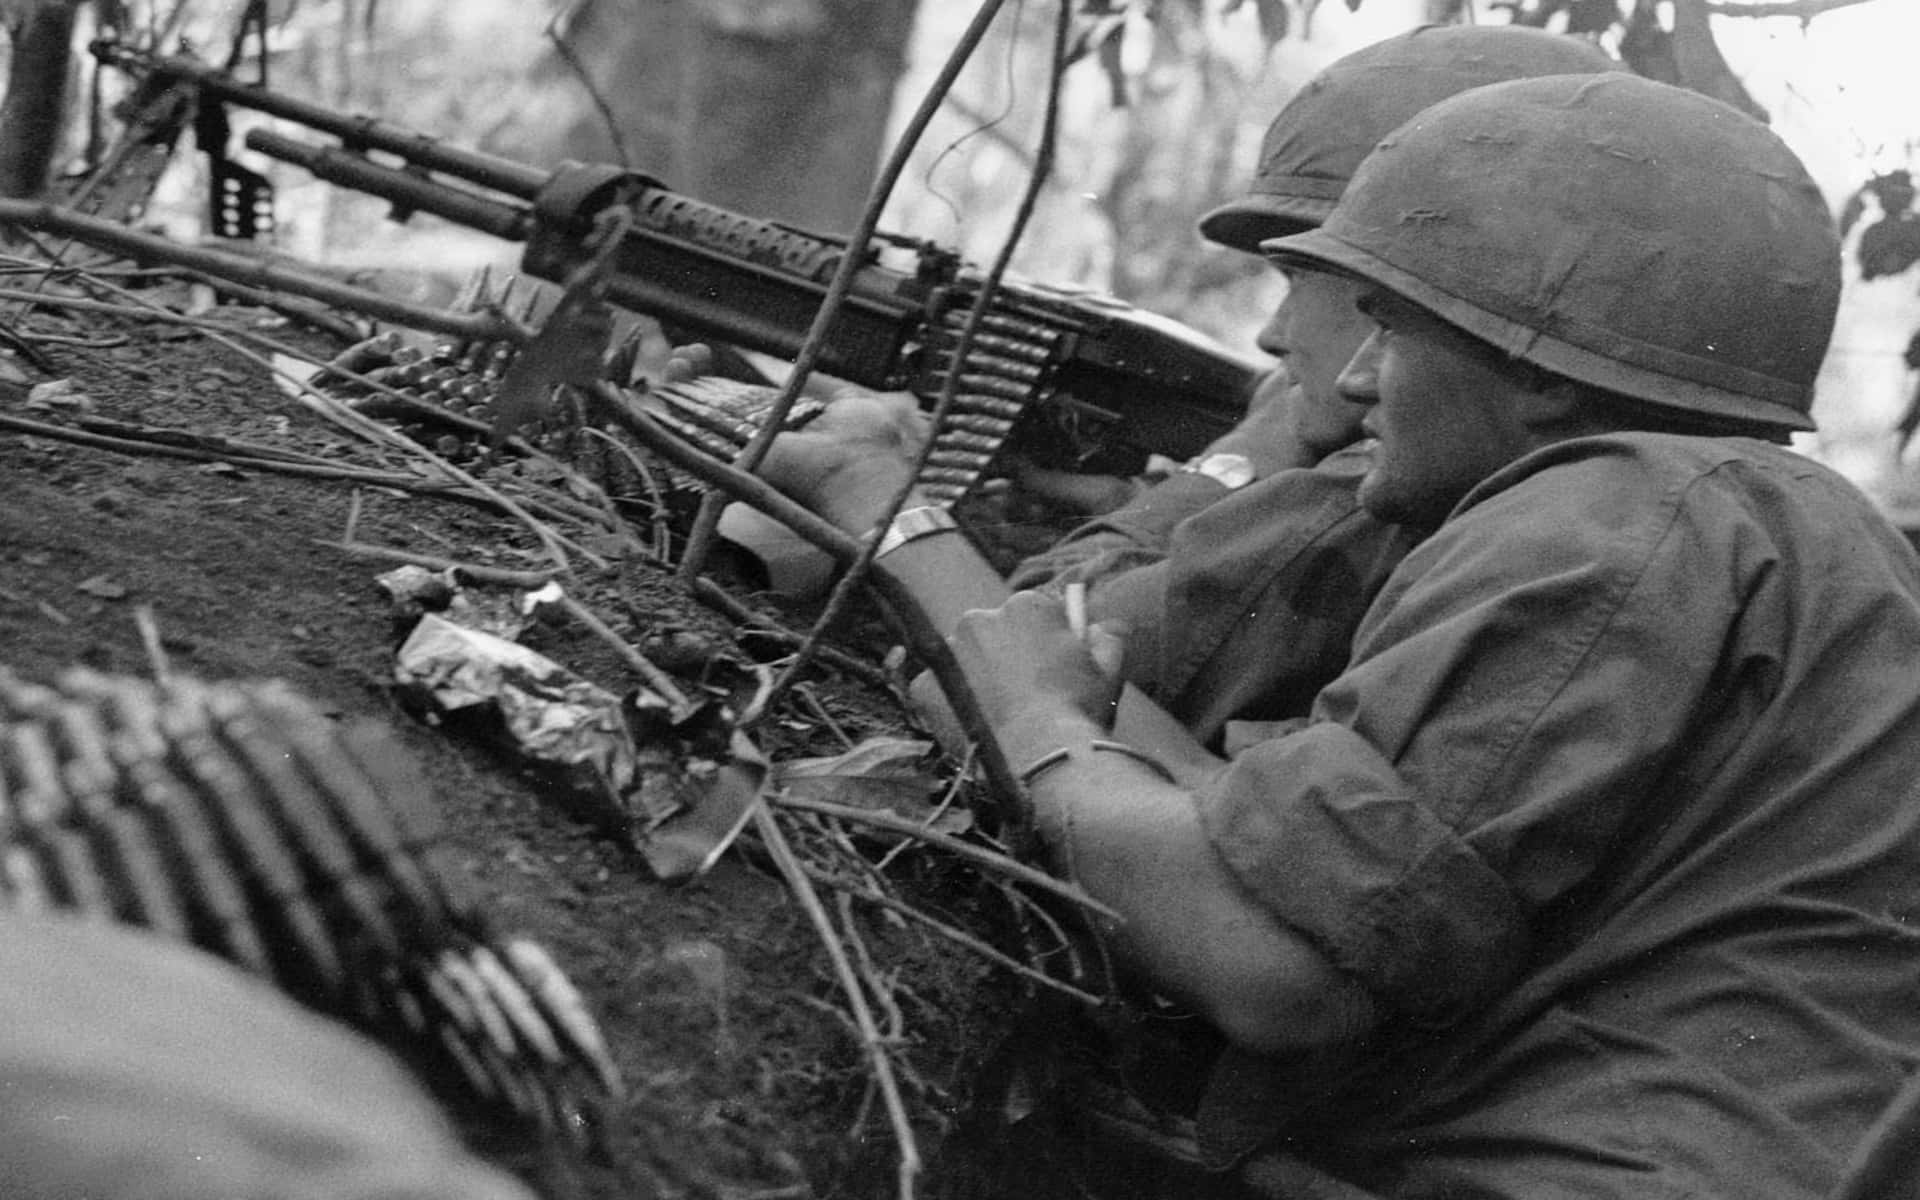 Soldatiamericani In Vietnam, Vivendo Le Dure Realtà Della Guerra.